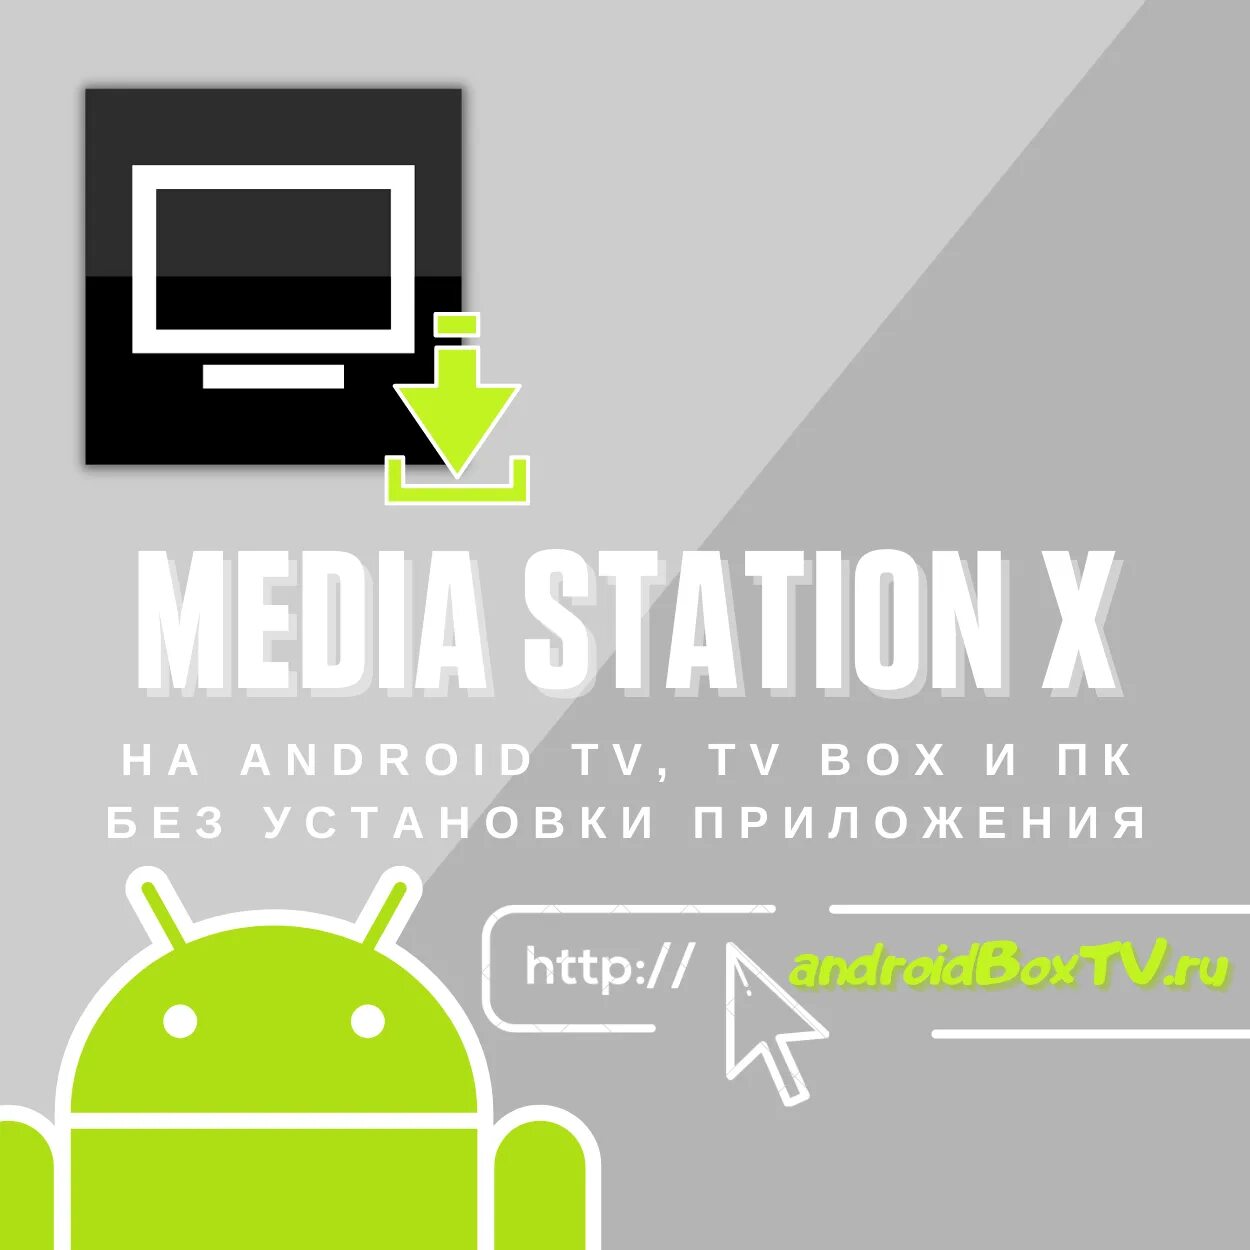 Media station x start. Медиа Стейшен х. Приложение Media Station x. Media Station x для андроид ТВ. MEDIASTATION X LG.